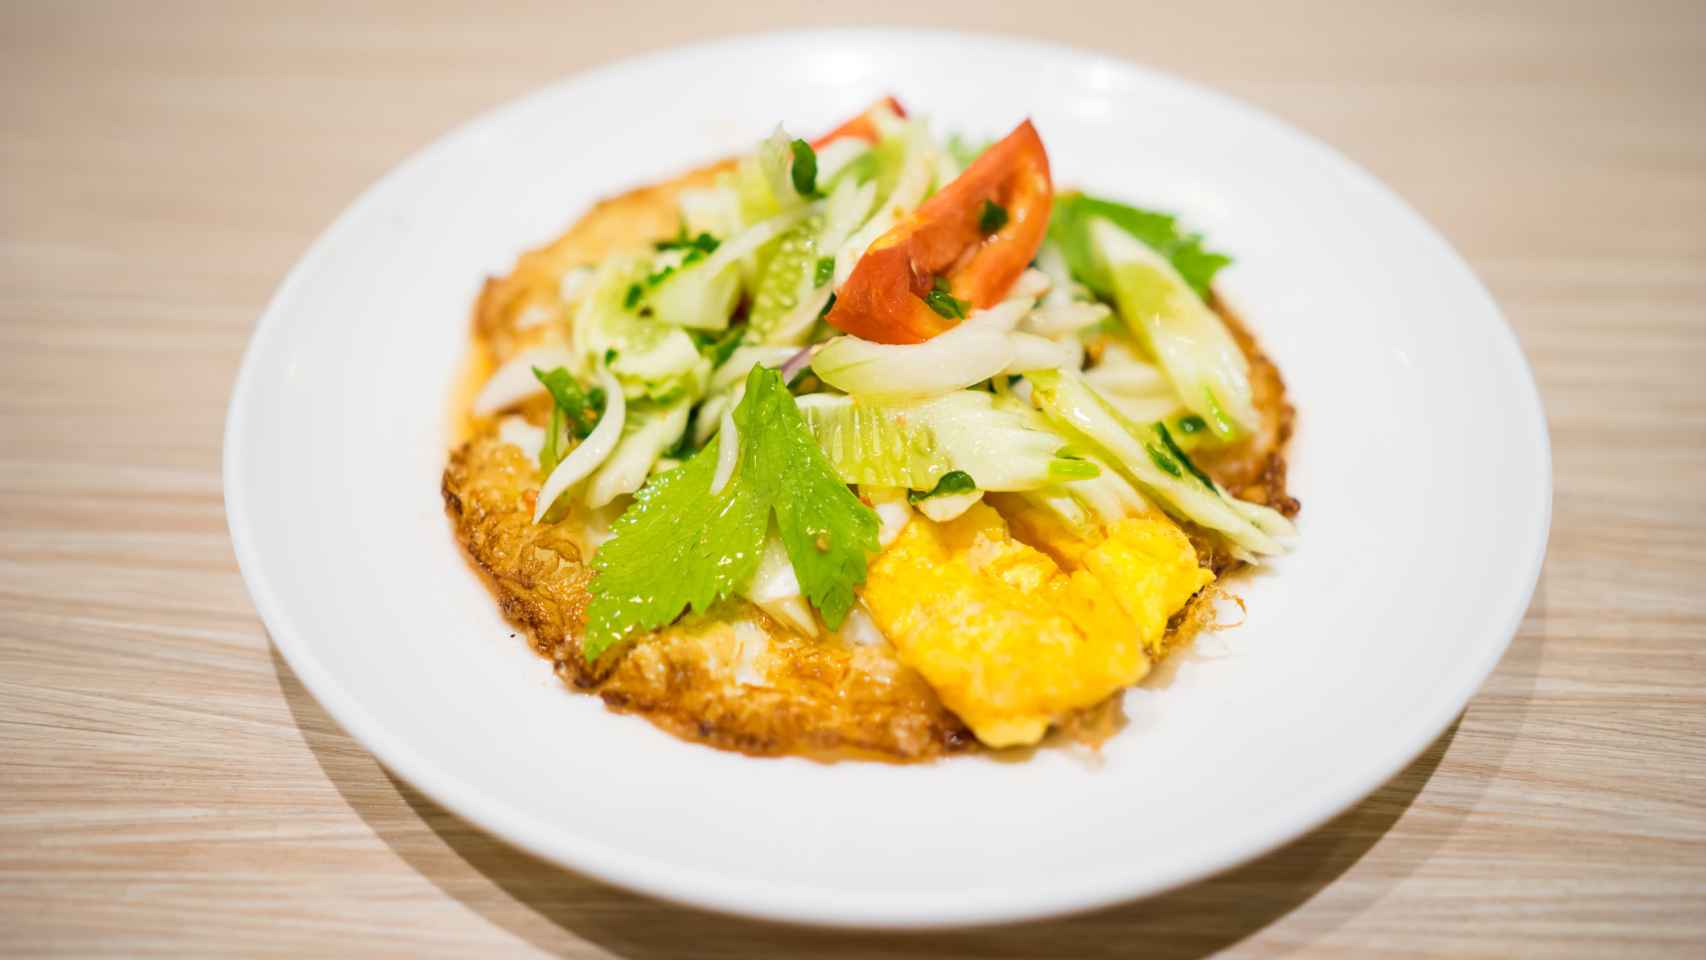 Adiós al pad thai, la mejor receta tailandesa es esta ensalada de huevos fritos